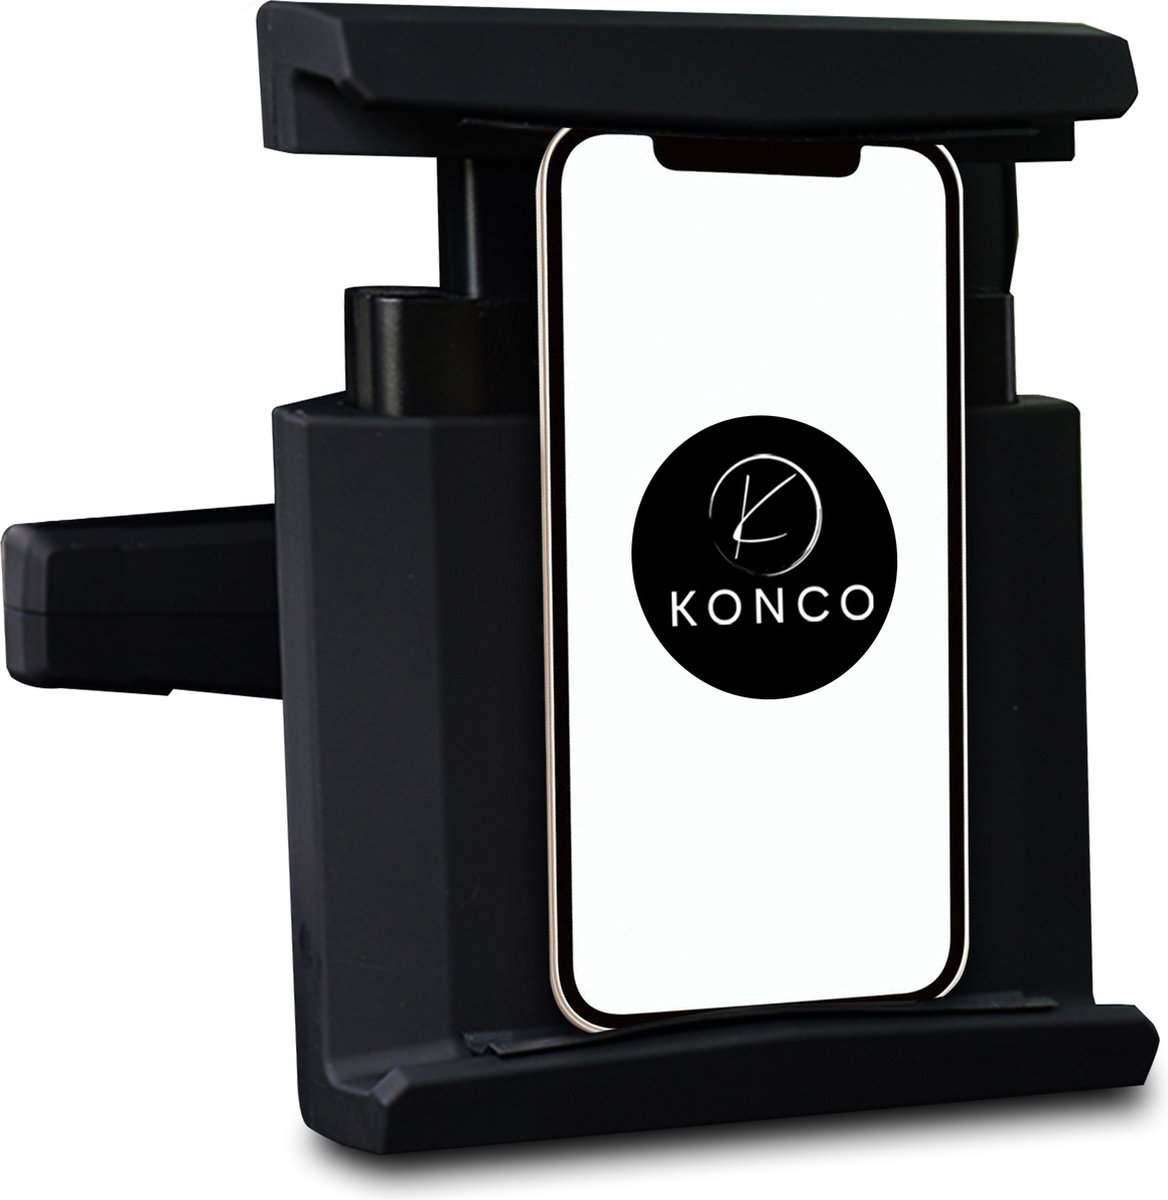 Konco - Tablethouder auto - Luxe tablethouder - Super stevig - Hoofdsteun